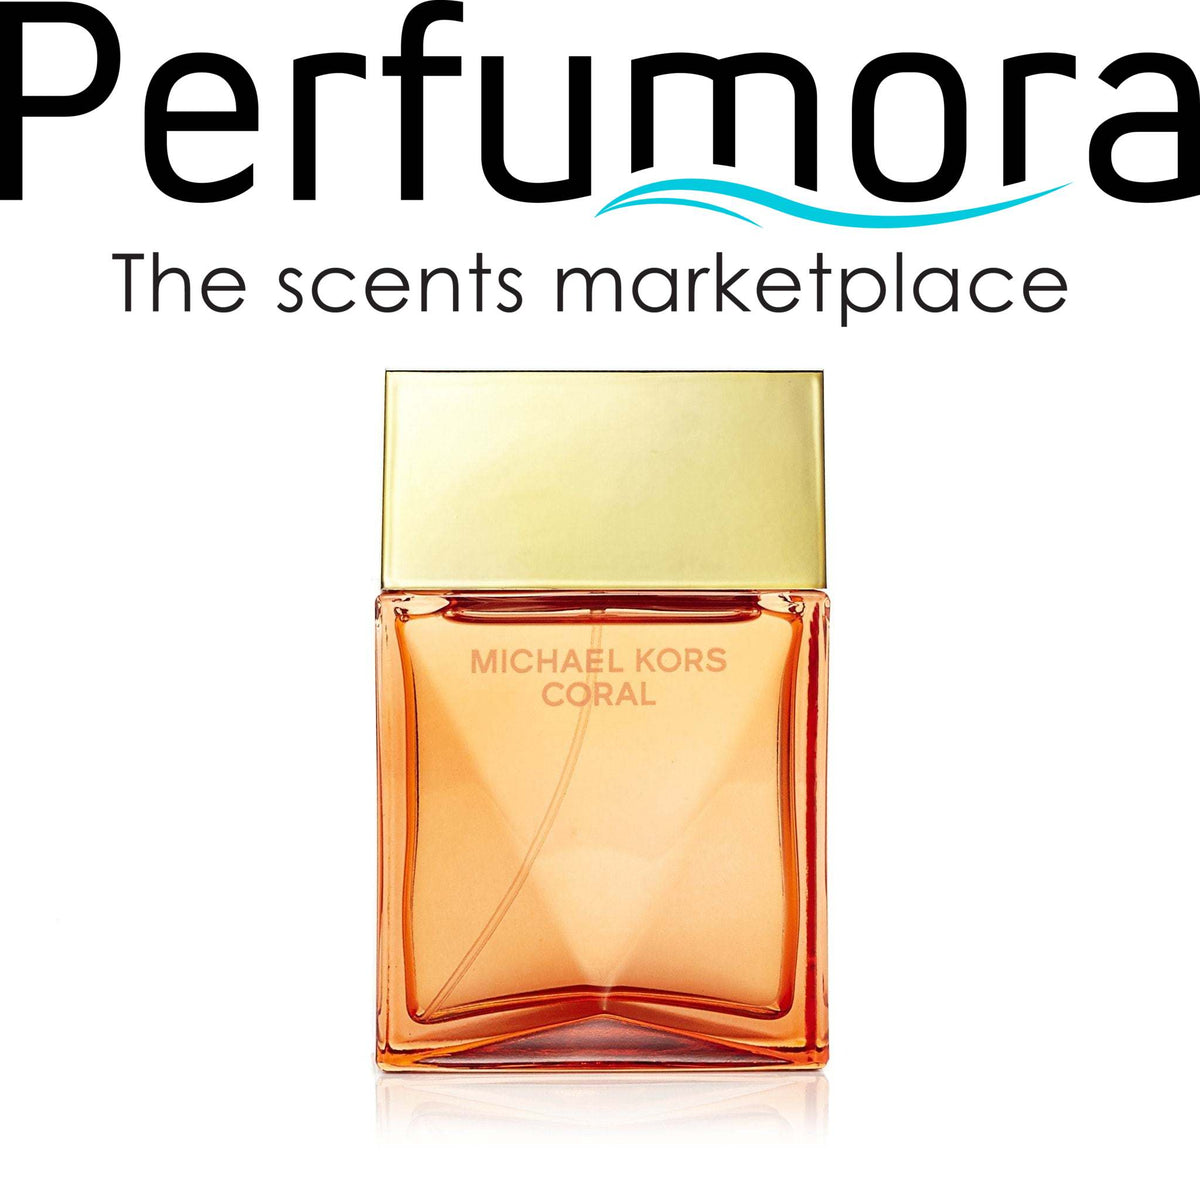 Coral Eau de Parfum Spray for Women by Michael Kors 3.4 oz.